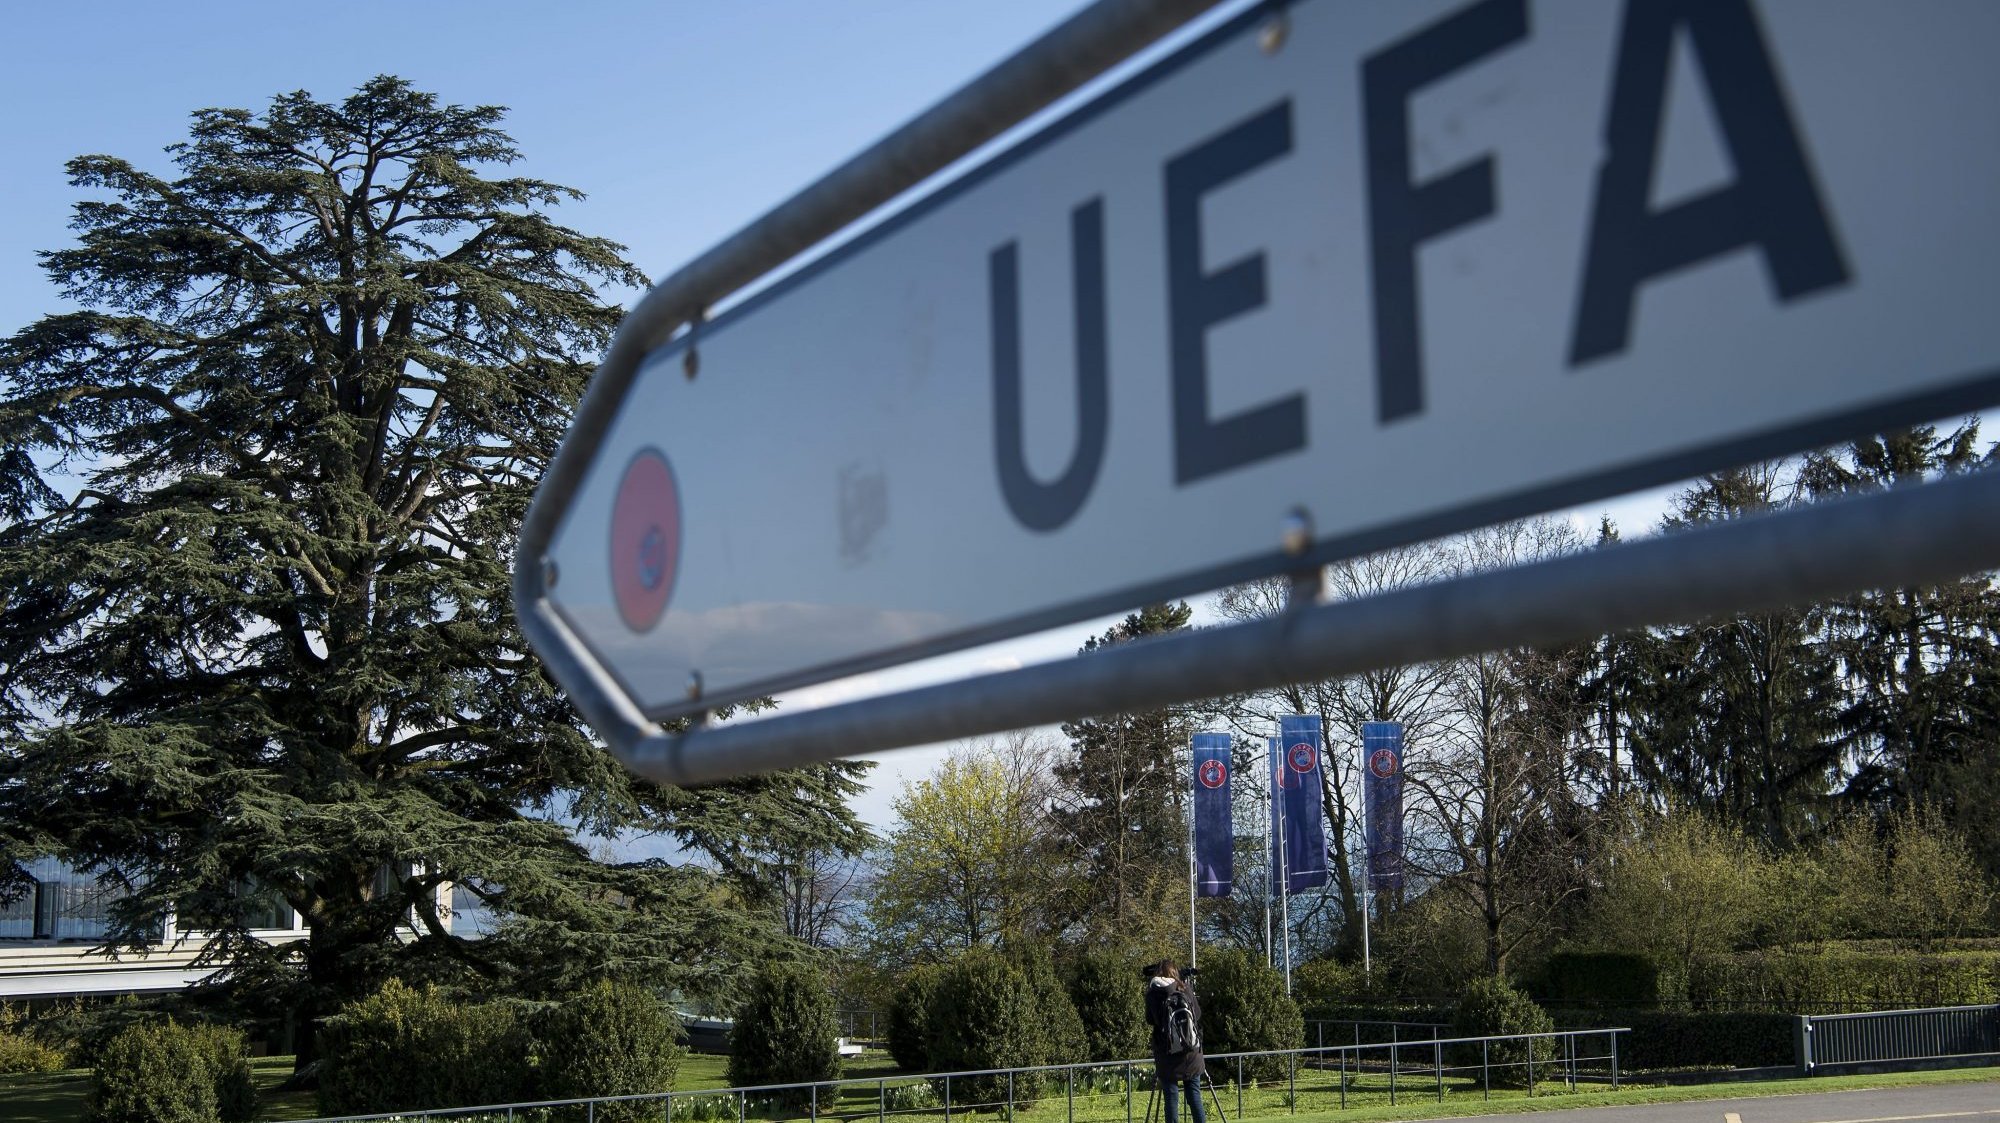 12 clubes anunciaram a criação de uma competição anual com 20 equipas, na véspera de a UEFA revelar o formato competitivo da Liga dos Campeões